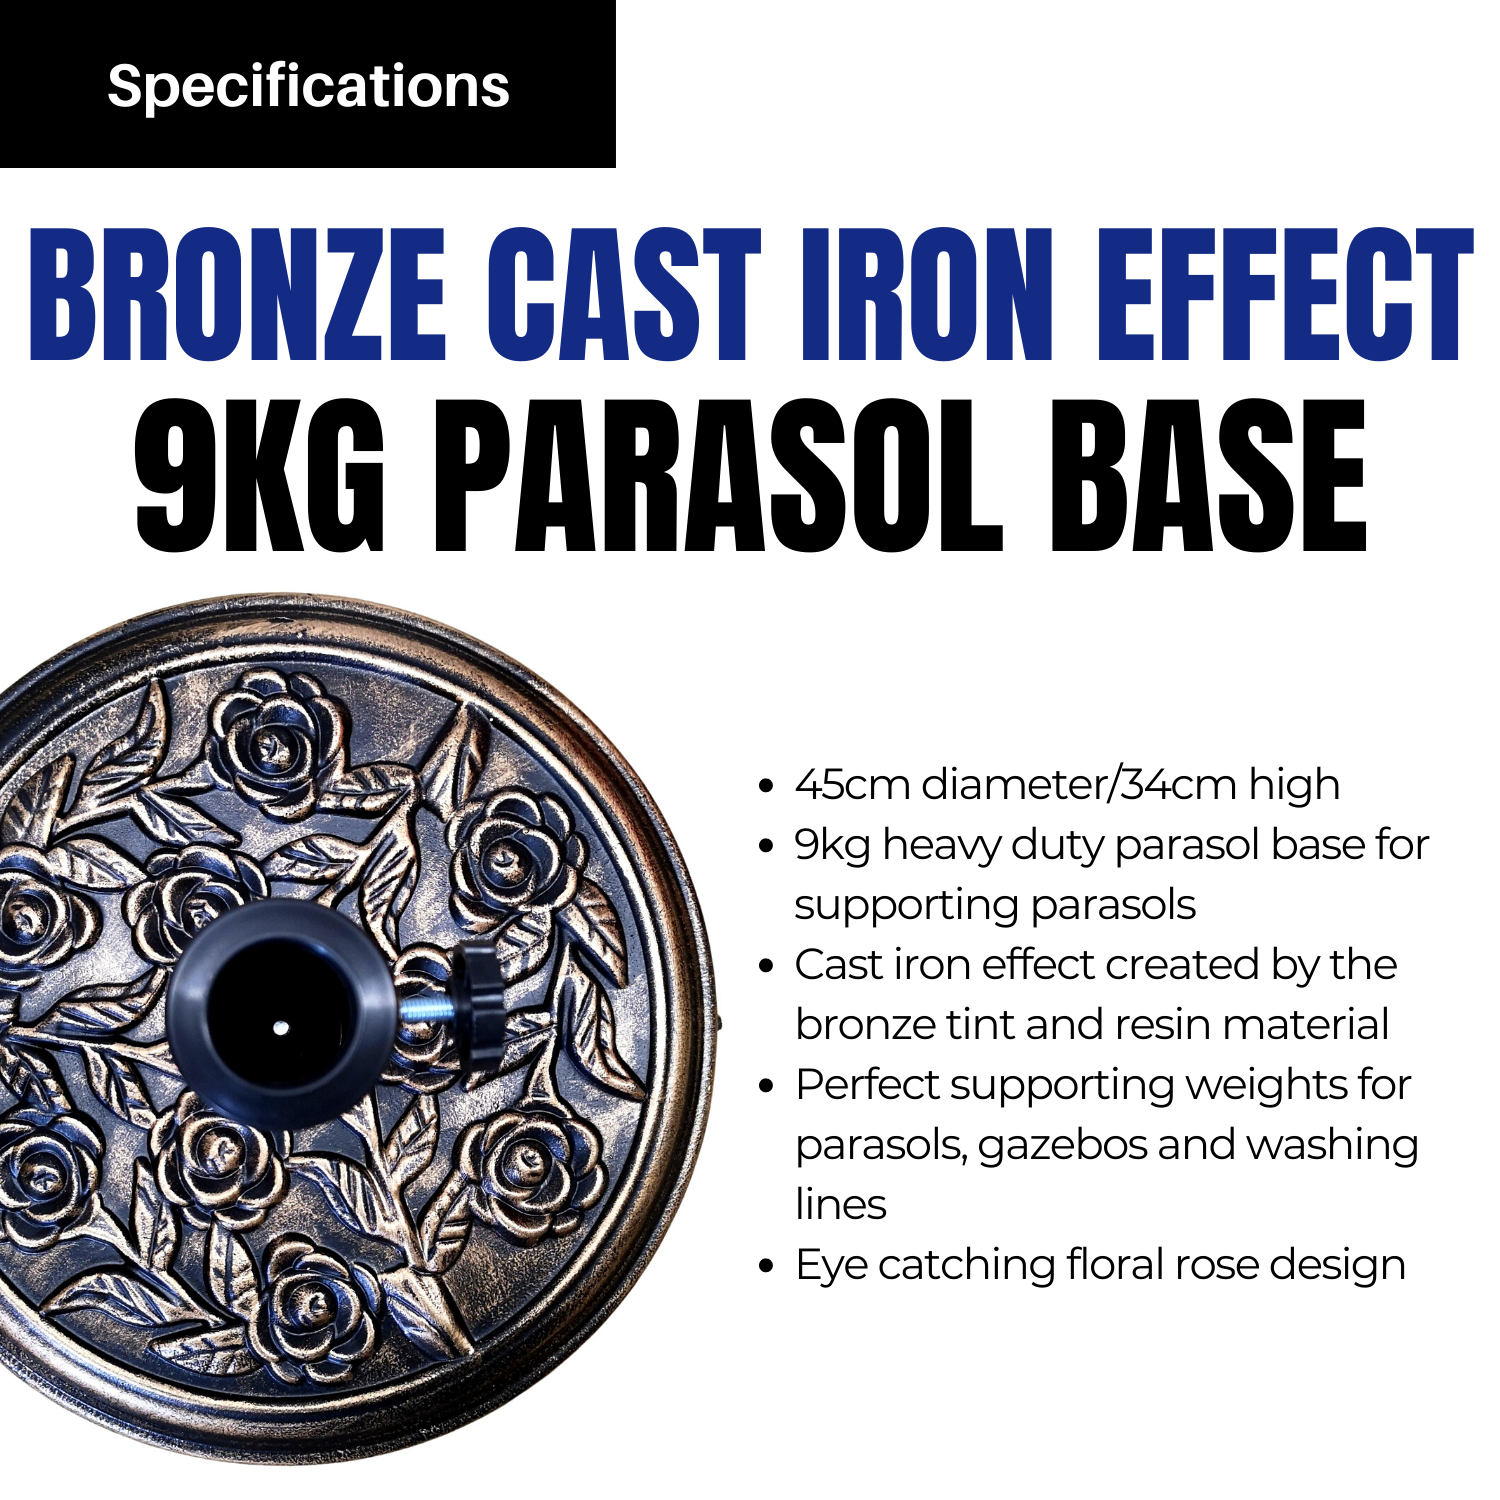 9kg Rose Cast Iron Effect Parasol Base